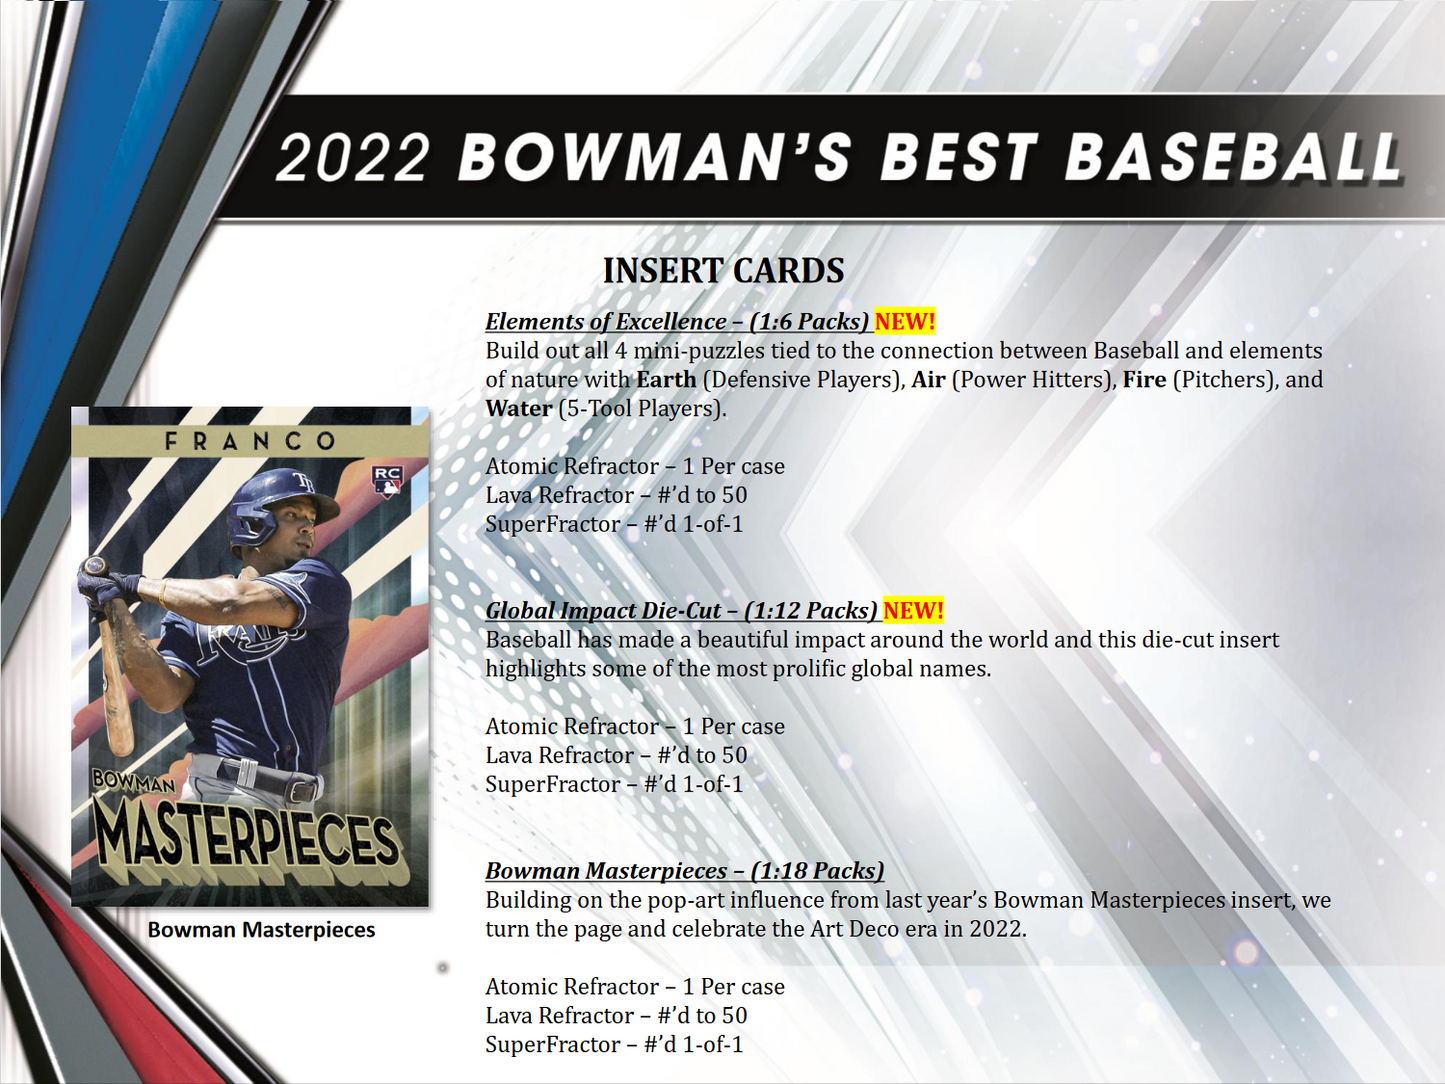 2022 Bowman's Best Baseball Hobby 8 Box Case